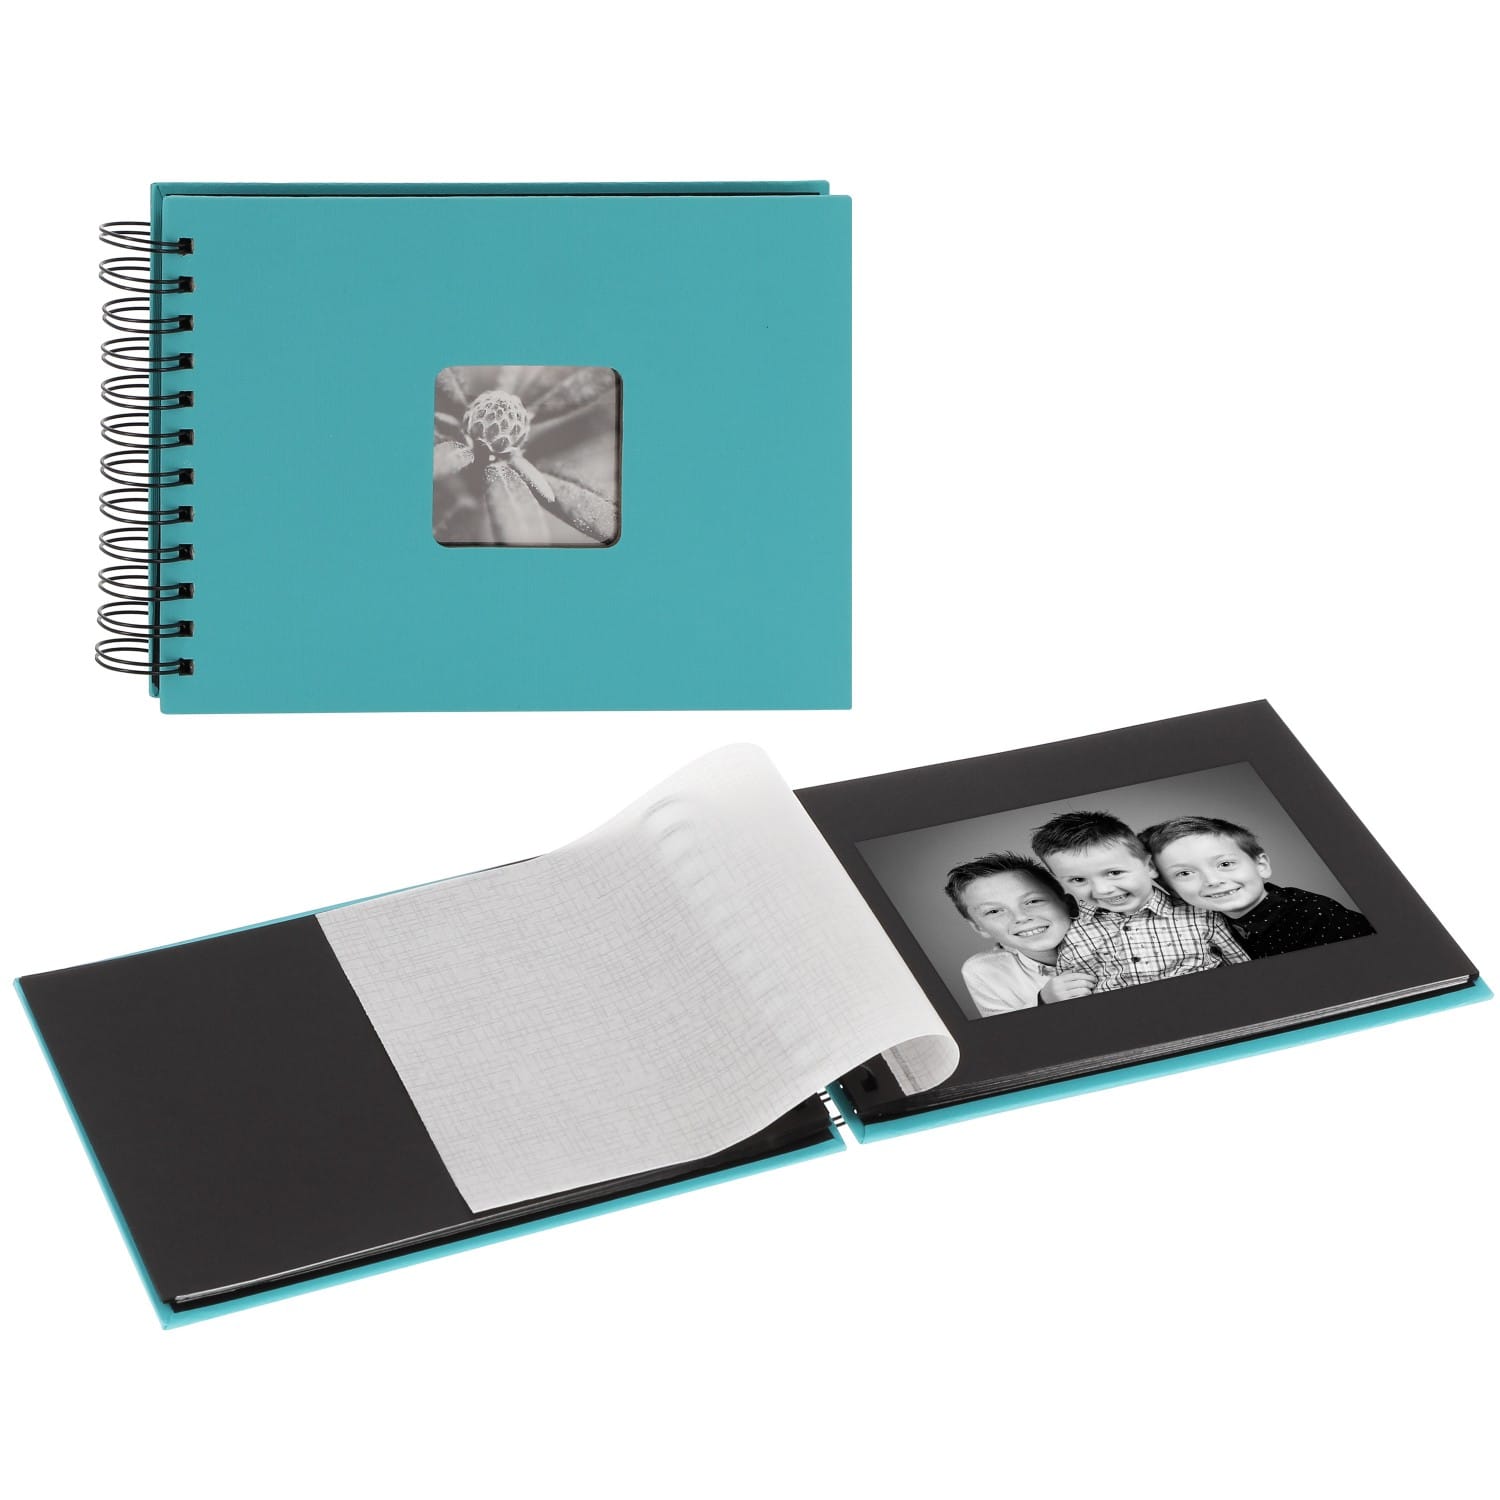 ART - + 50 noires cristal 50 + FINE Mini album - feuillets 24x17cm Bleue Turquoise HAMA traditionnel SPIRAL photos pages fenêtre - Couverture